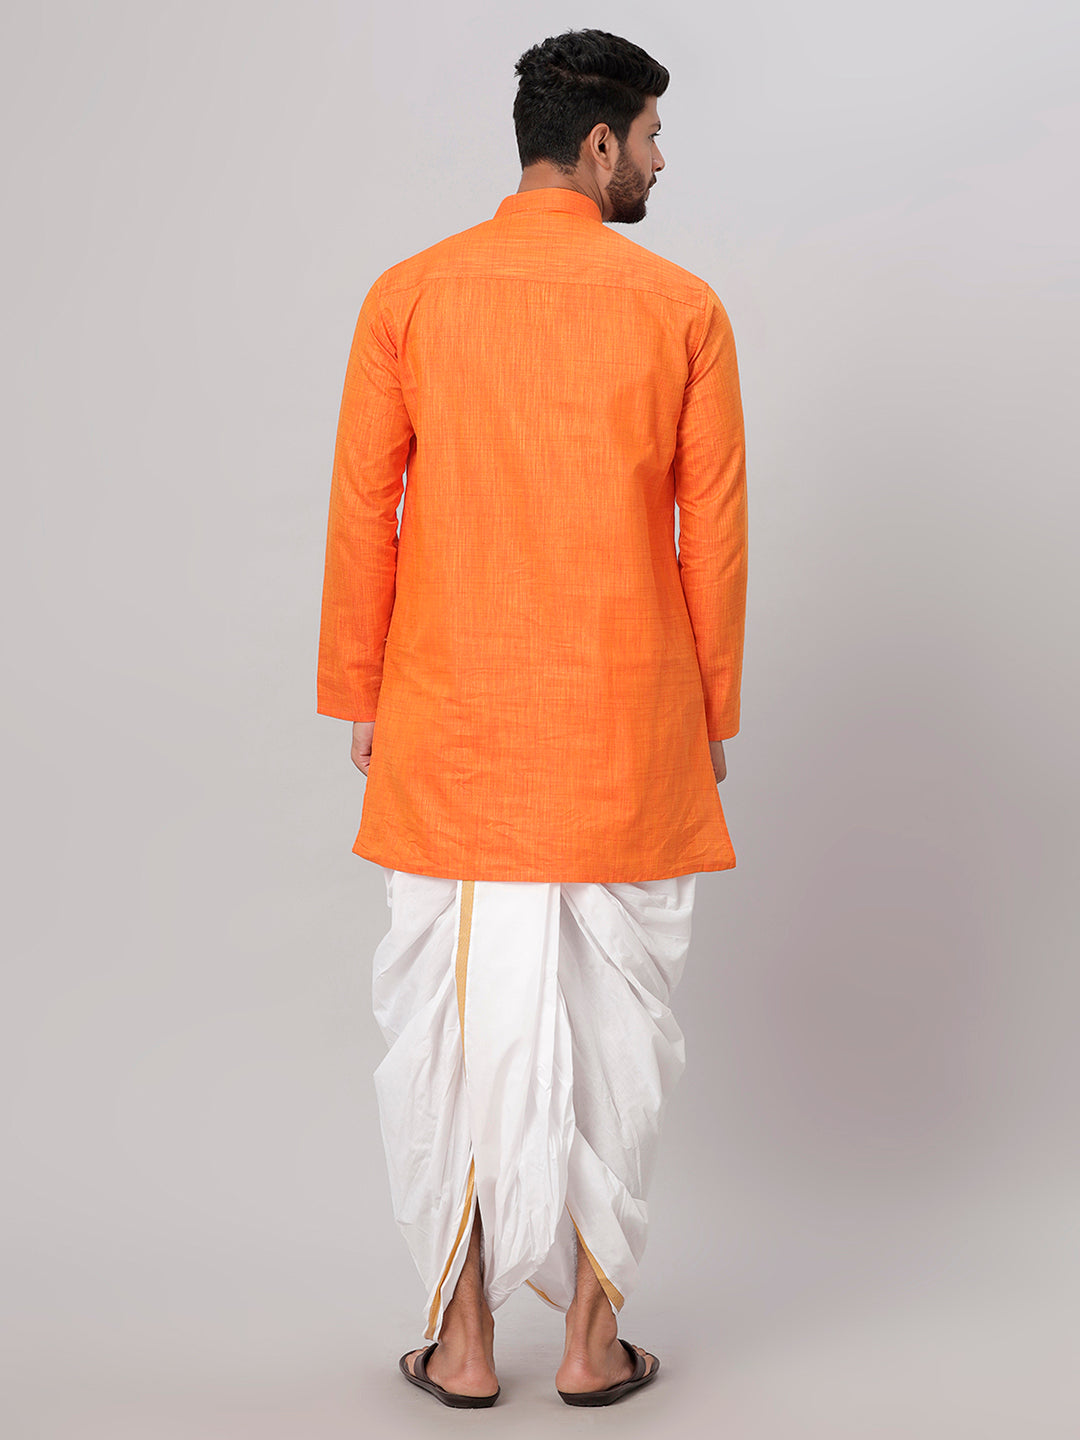 Mens Medium Length Orange Kurta with White Panchakacham Combo FS3-Back view